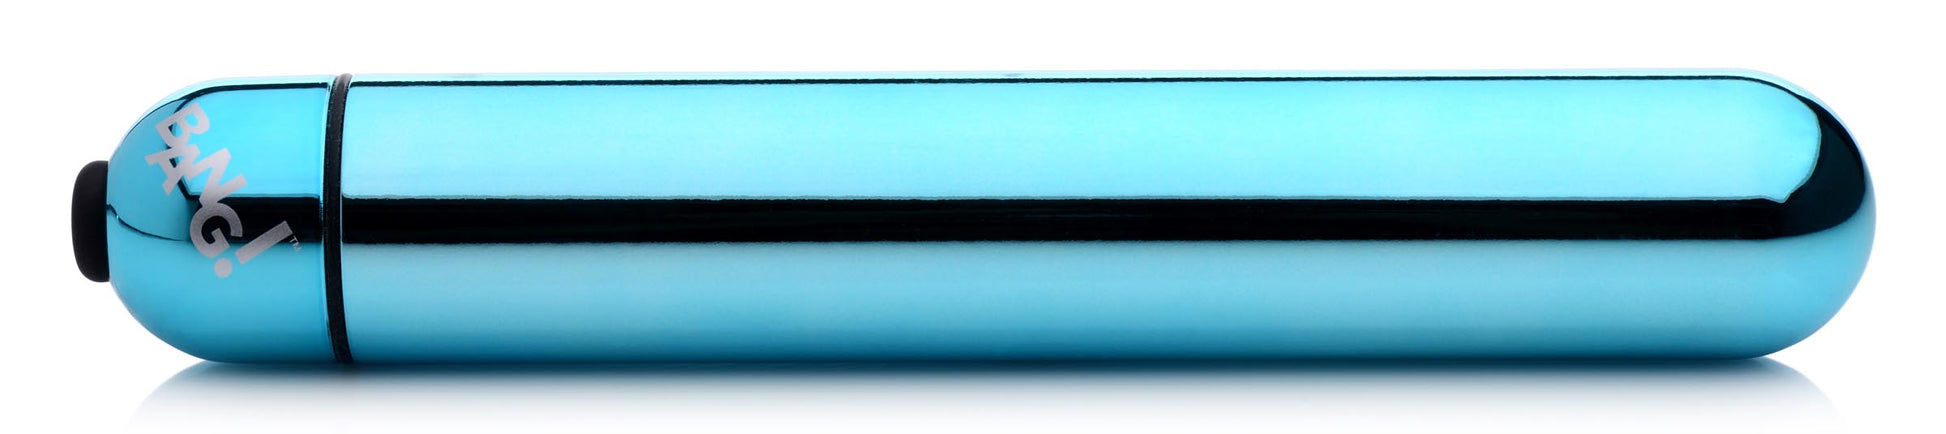 XL Vibrating Metallic Bullet - Blue - UABDSM